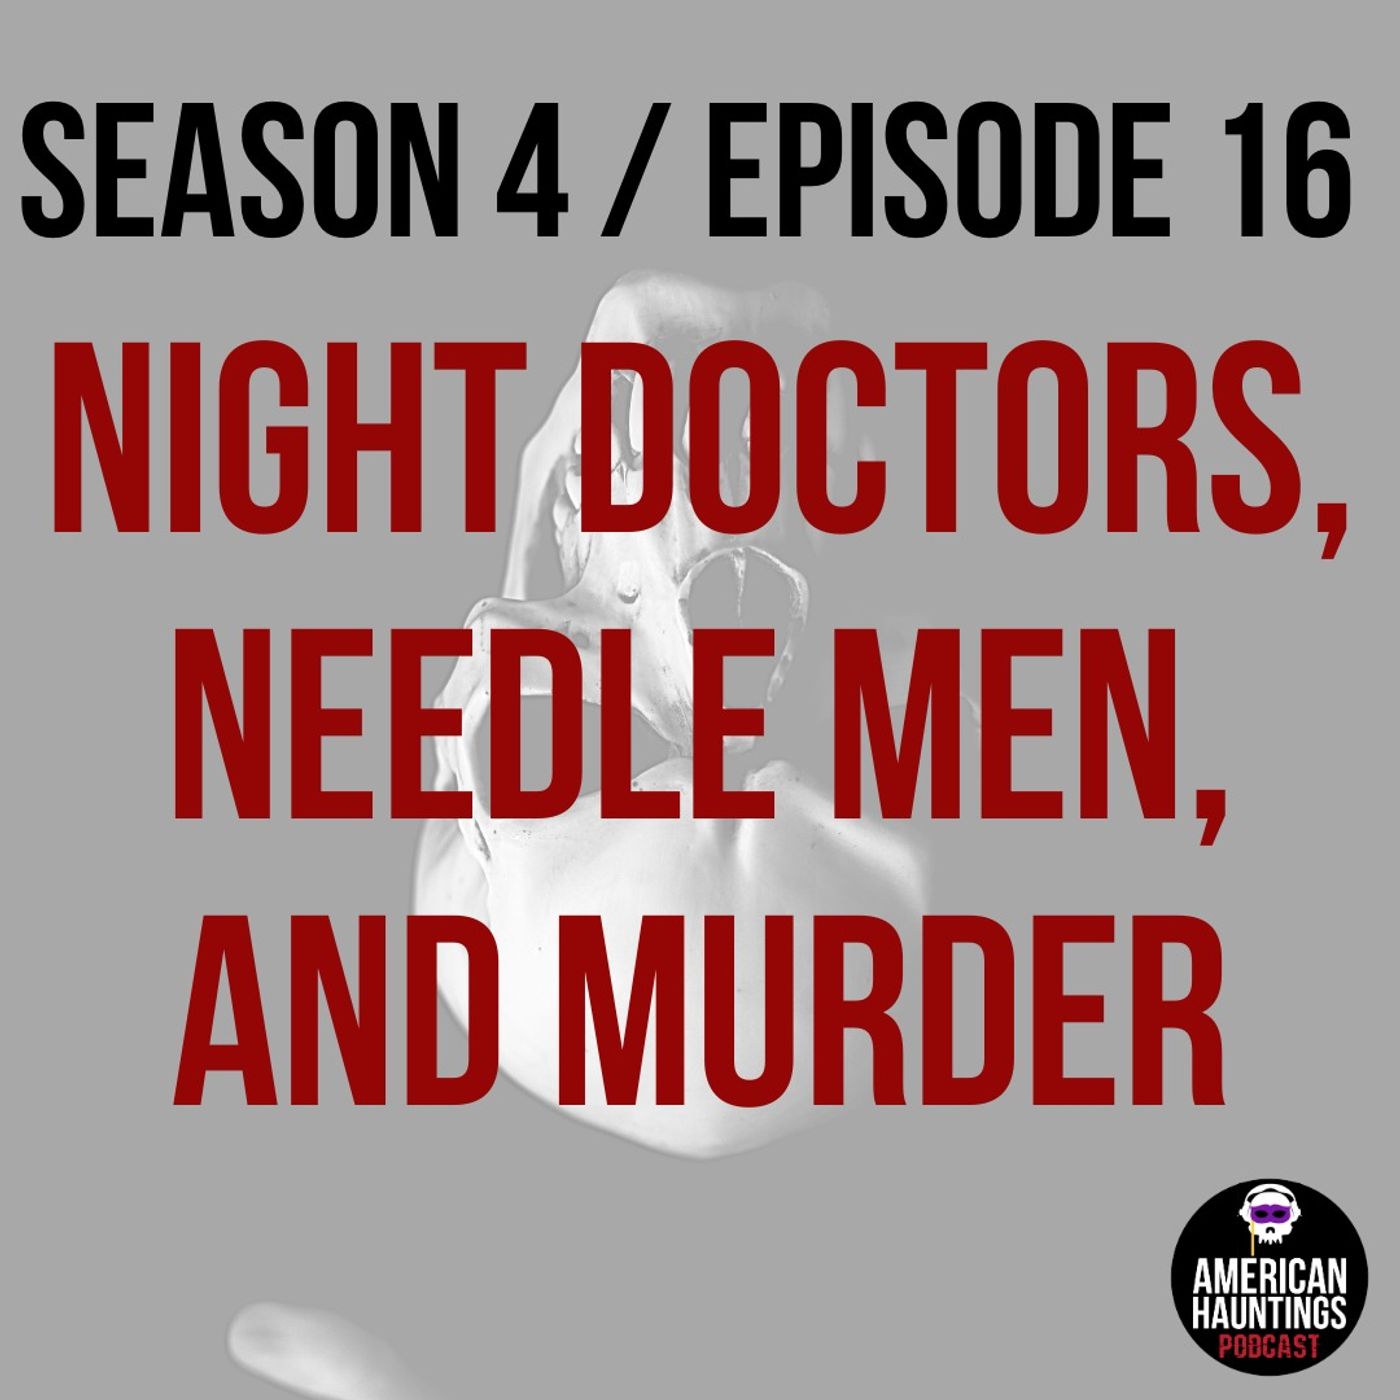 Night Doctors, Needle Men, And Murder